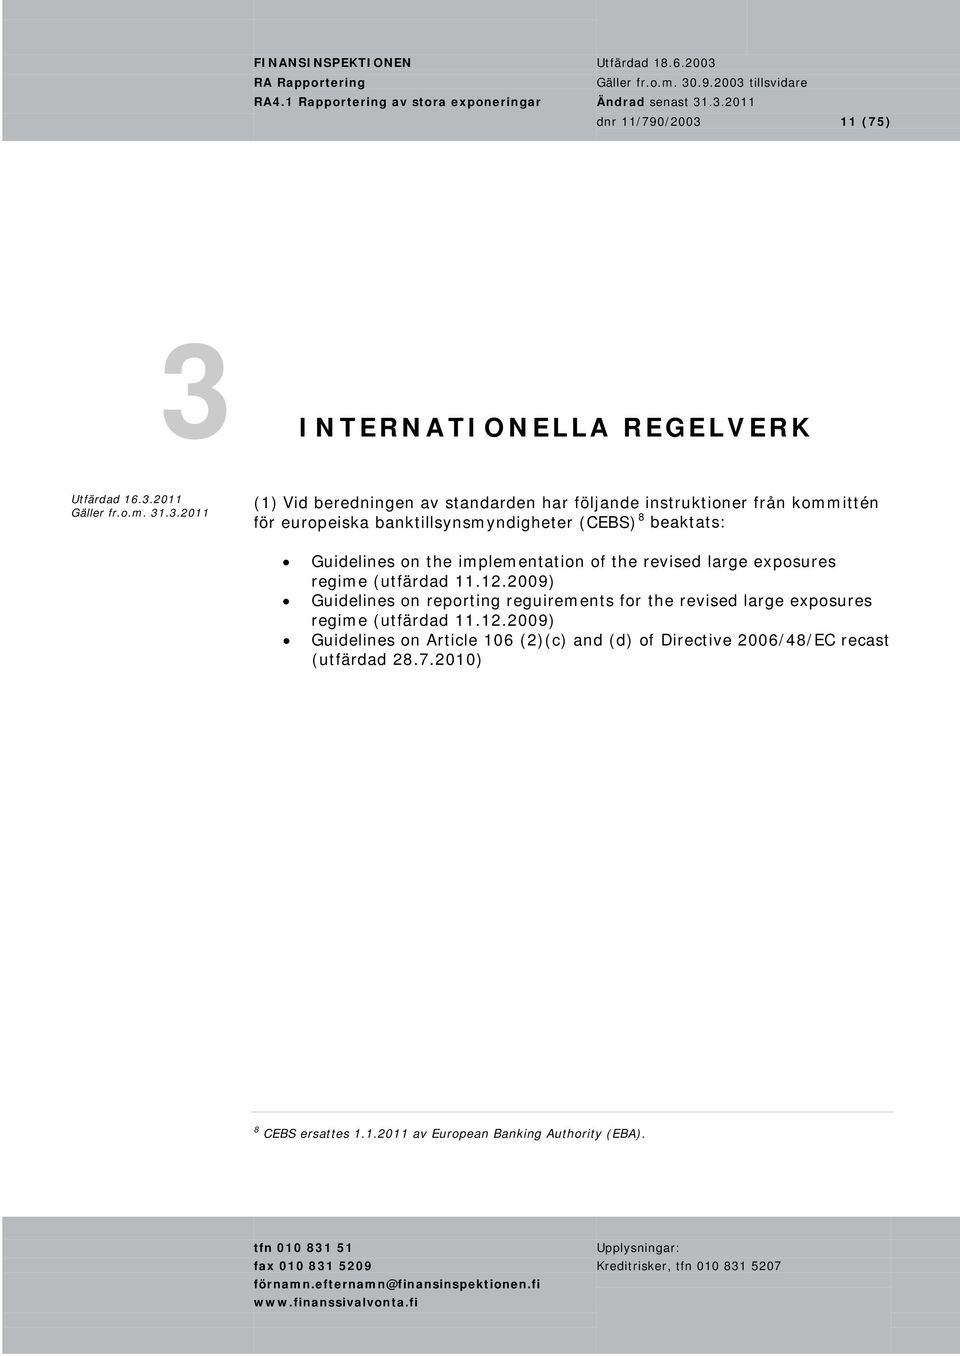 (utfärdad 11.12.2009) Guidelines on reporting reguirements for the revised large exposures regime (utfärdad 11.12.2009) Guidelines on Article 106 (2)(c) and (d) of Directive 2006/48/EC recast (utfärdad 28.